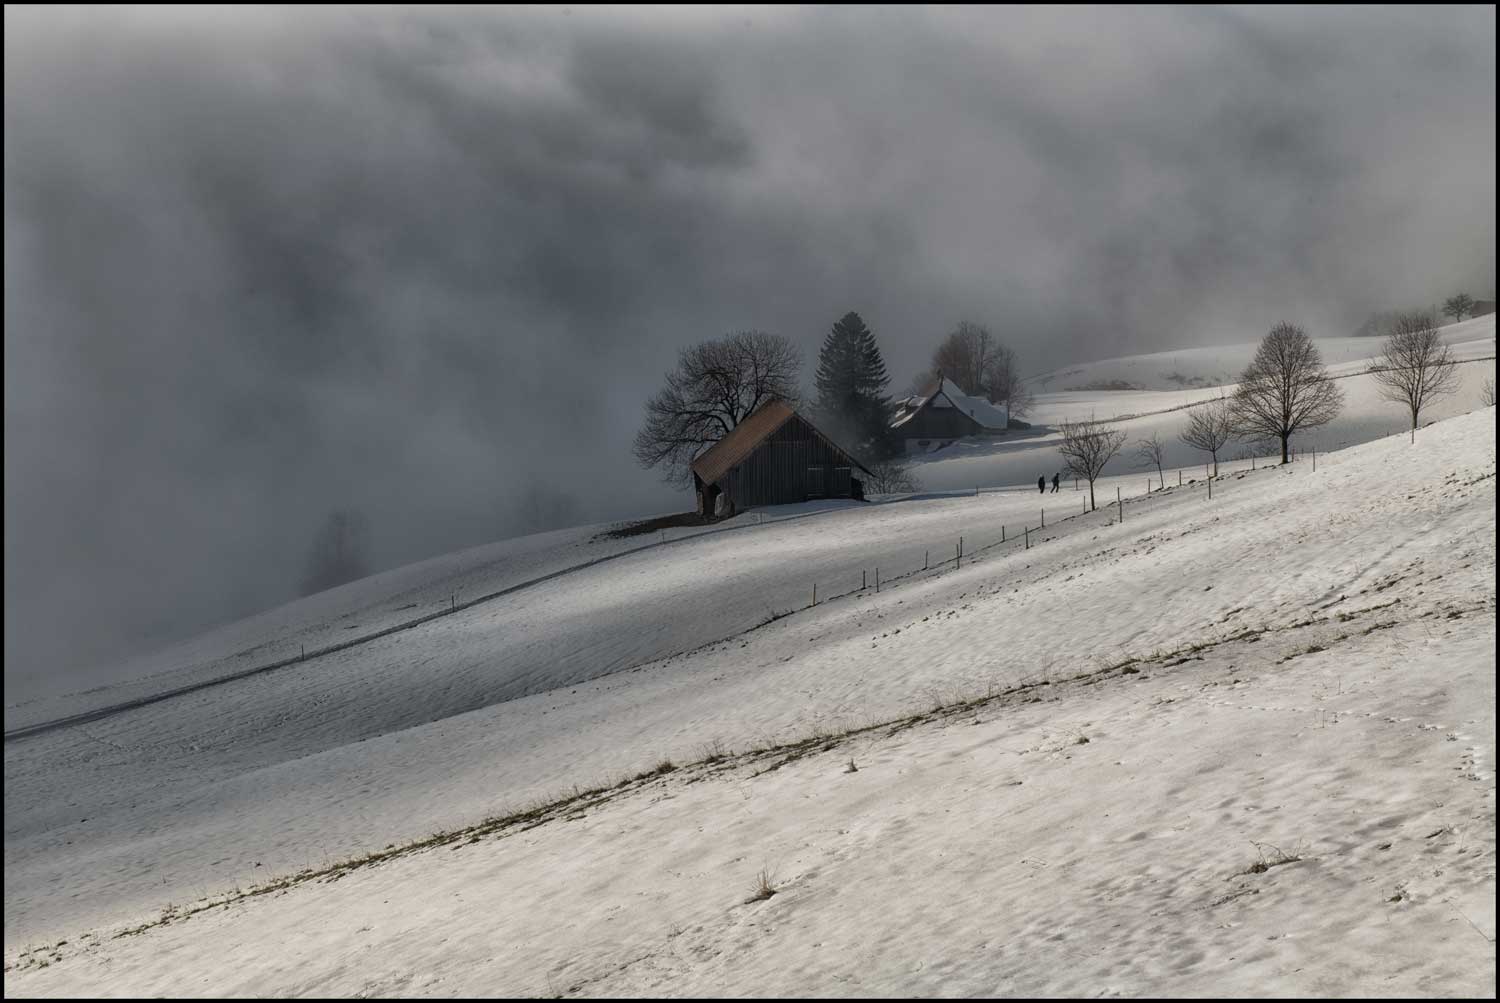 Nebel in den Alpen